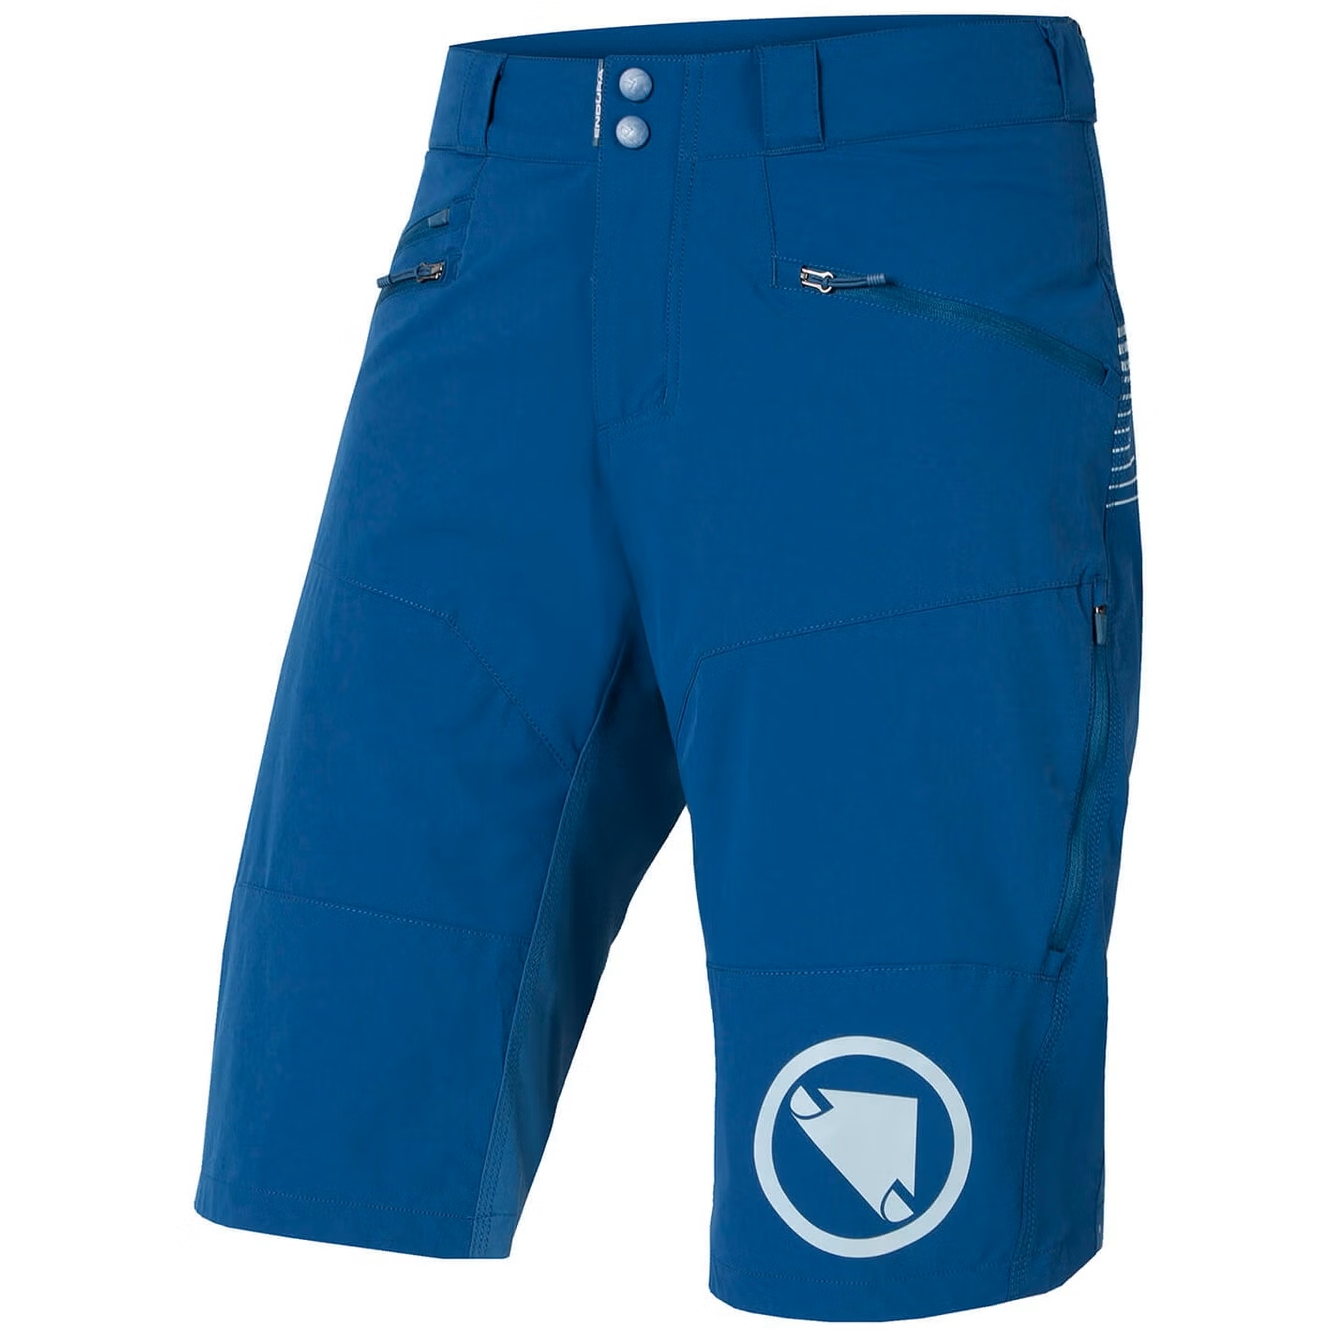 Produktbild von Endura SingleTrack II Shorts Herren - blueberry